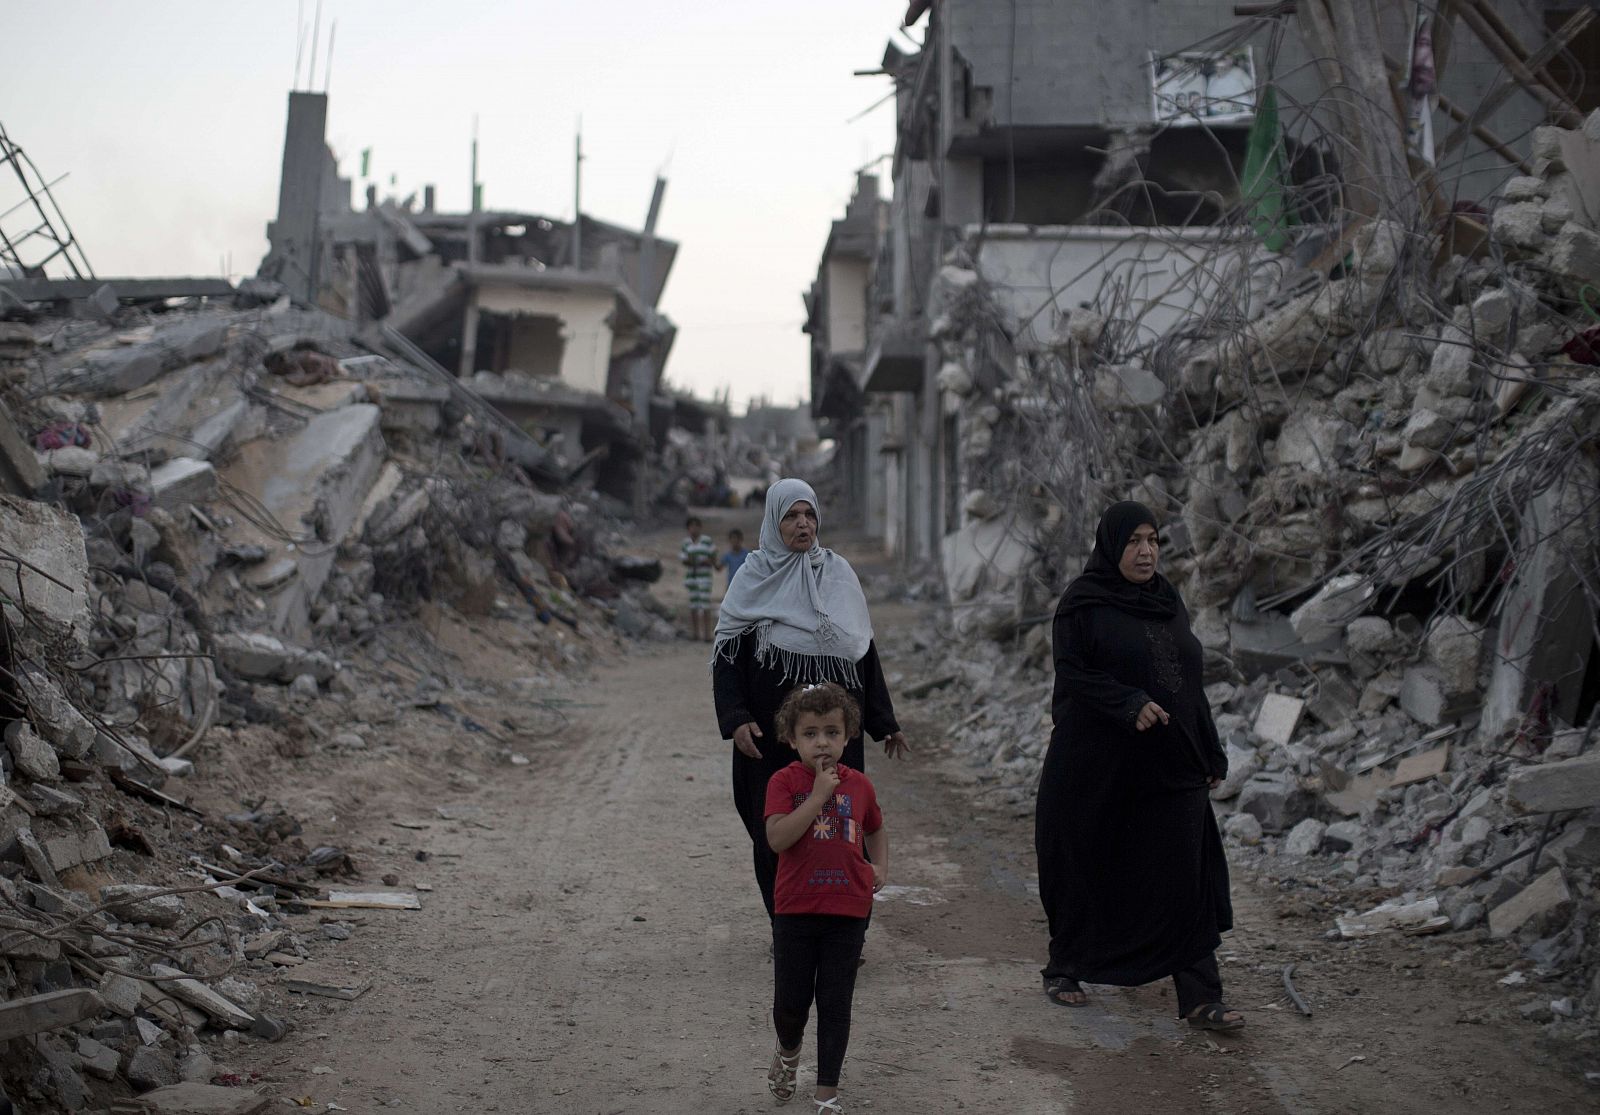 Mujeres palestinas caminan en medio de edificios de Gaza que fueron destruidos durante los 50 días de conflicto entre Israel y Hamas